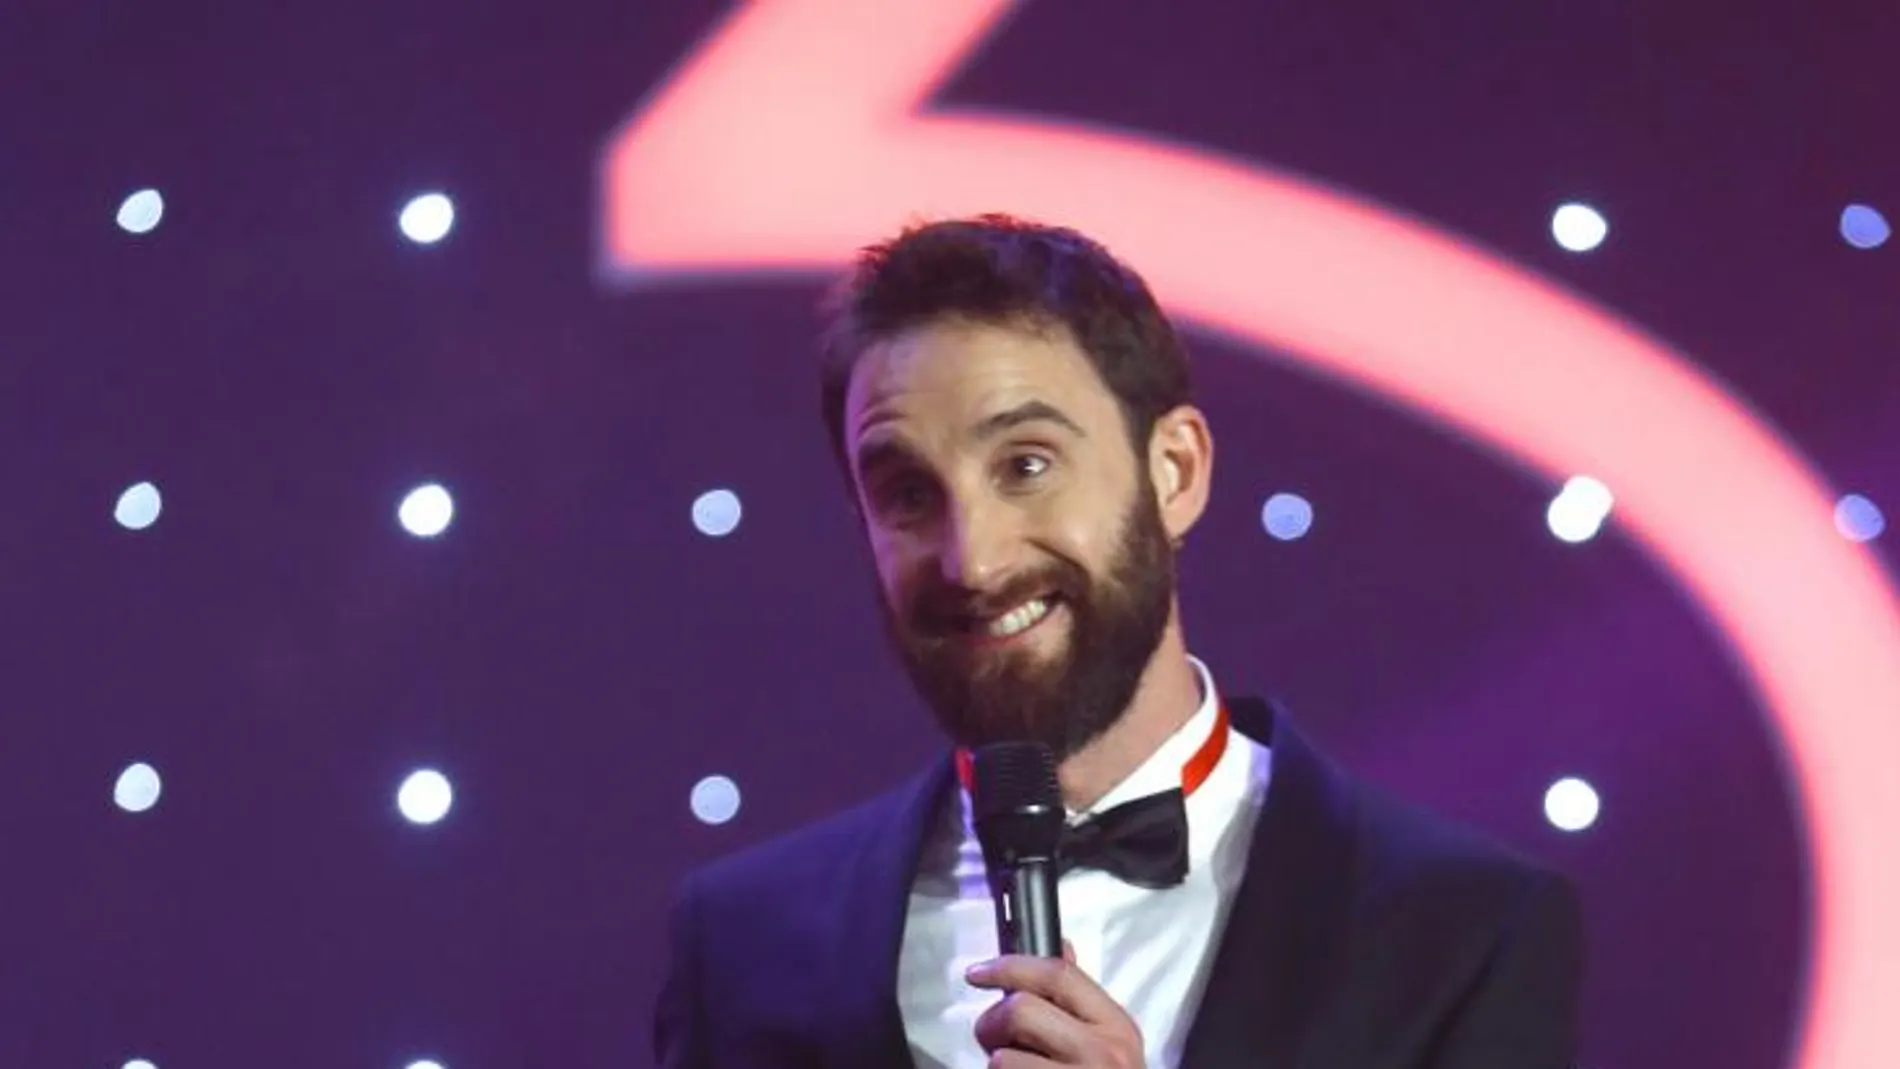 El actor y humorista Dani Rovira presenta la ceremonia de la 30 edición de los Premios Goya